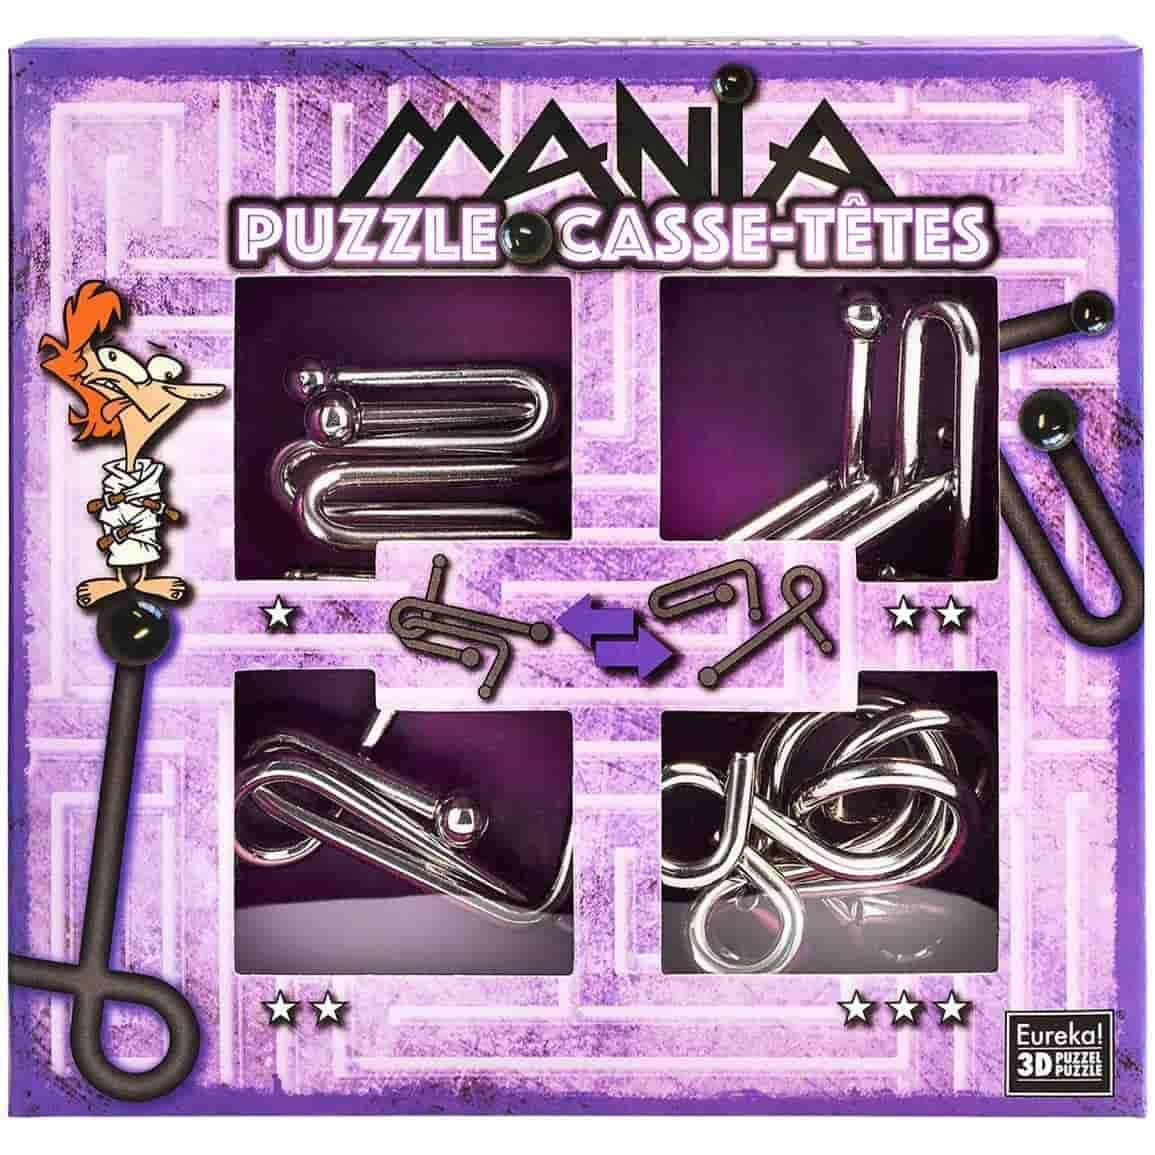 Puzzle Mania casse-tetes Purple-Eureka Puzzle-1-Játszma.ro - A maradandó élmények boltja